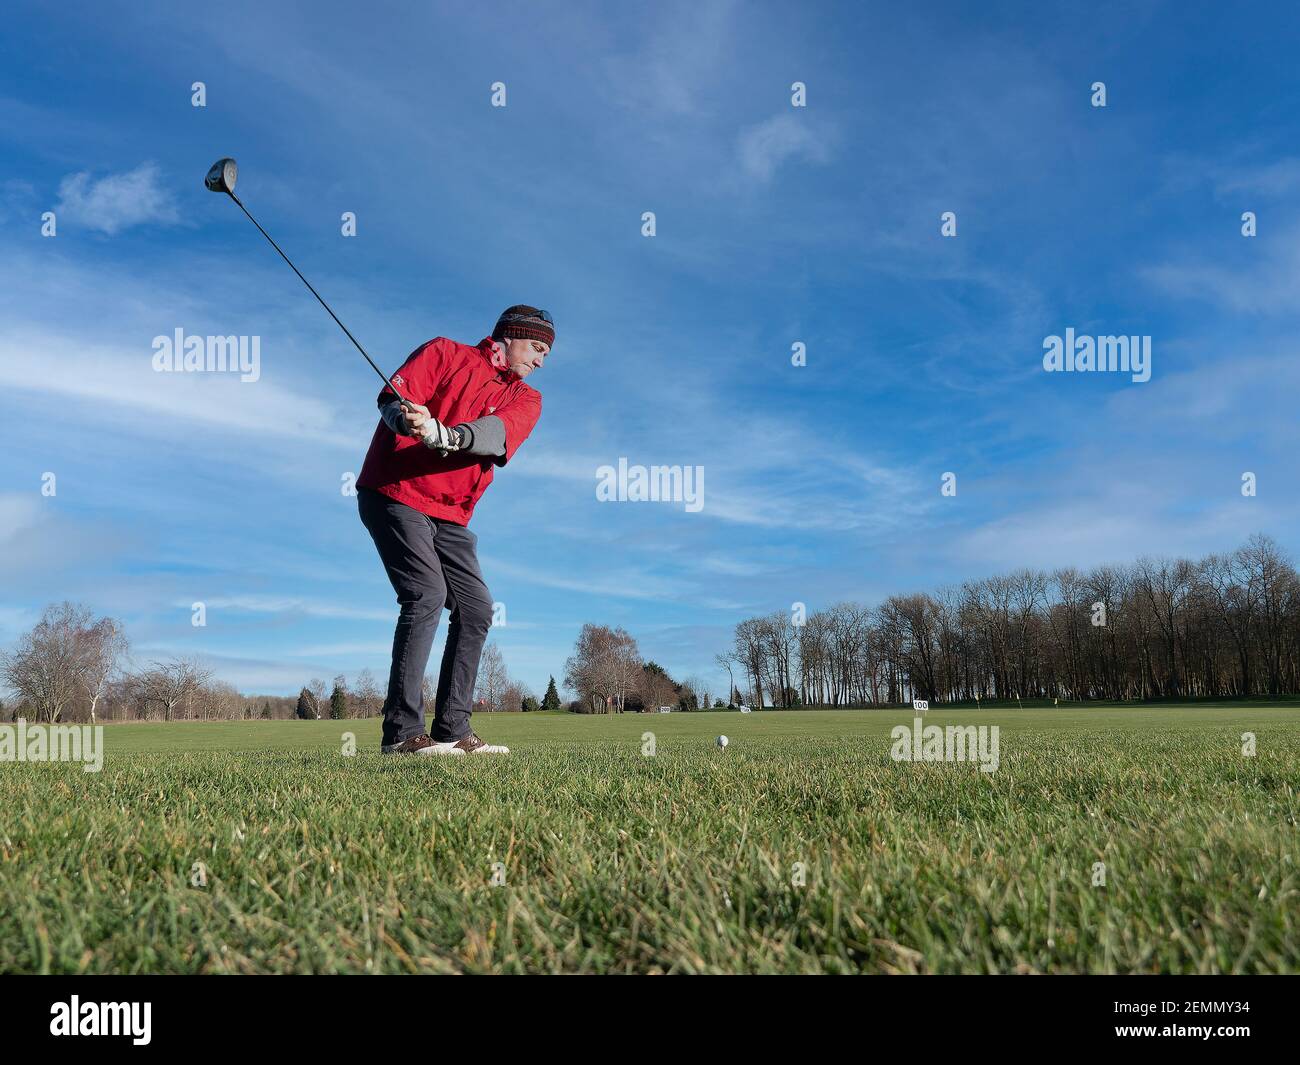 Caen, France, février 2021. Un parcours de golf et un joueur pratiquant un long choc en arrière, de dessous vous pouvez voir l'herbe verte, le ciel bleu Banque D'Images